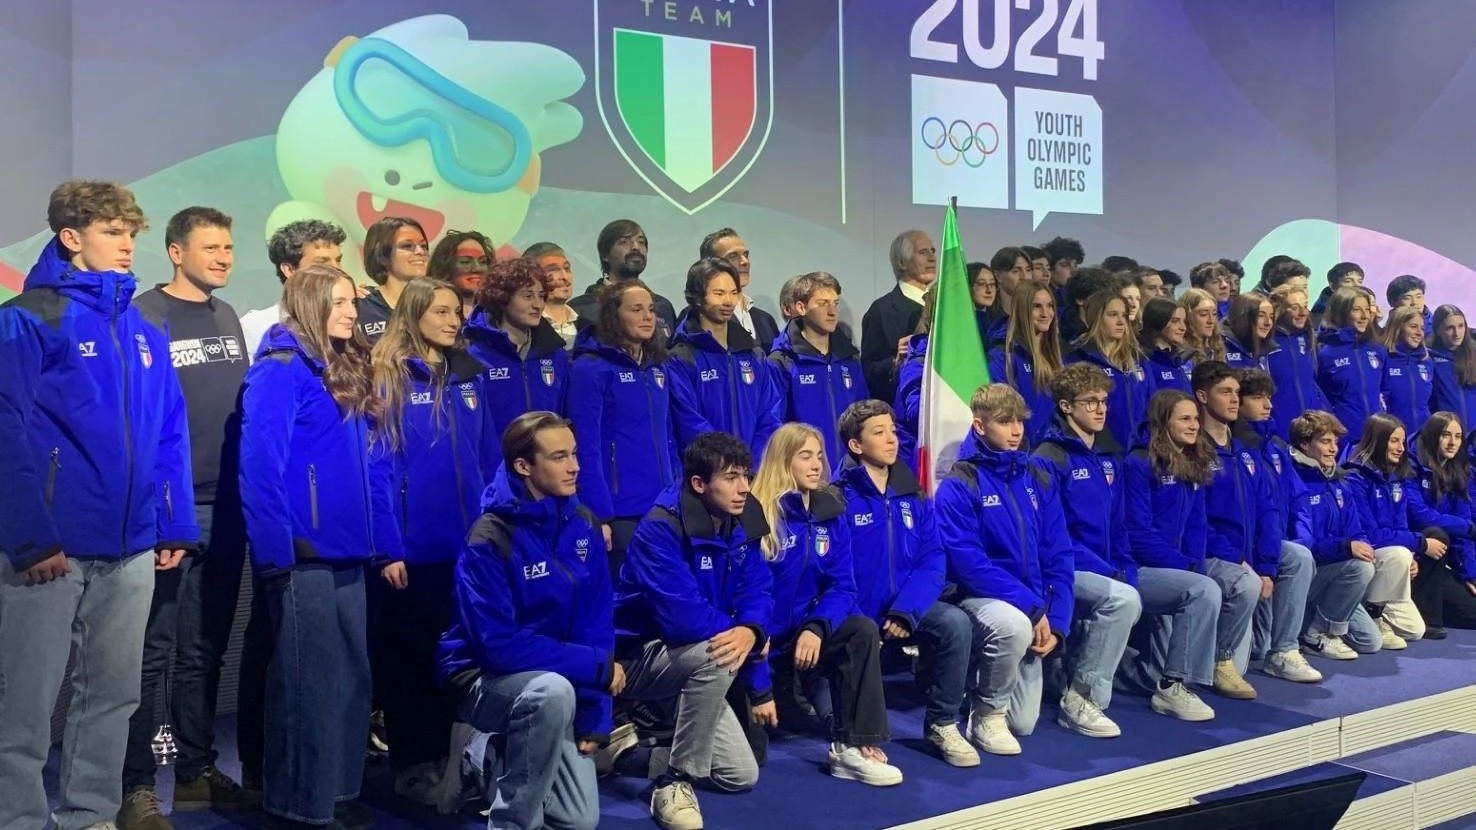 Ecco le Olimpiadi giovanili. L’Italia Team per Gangwon